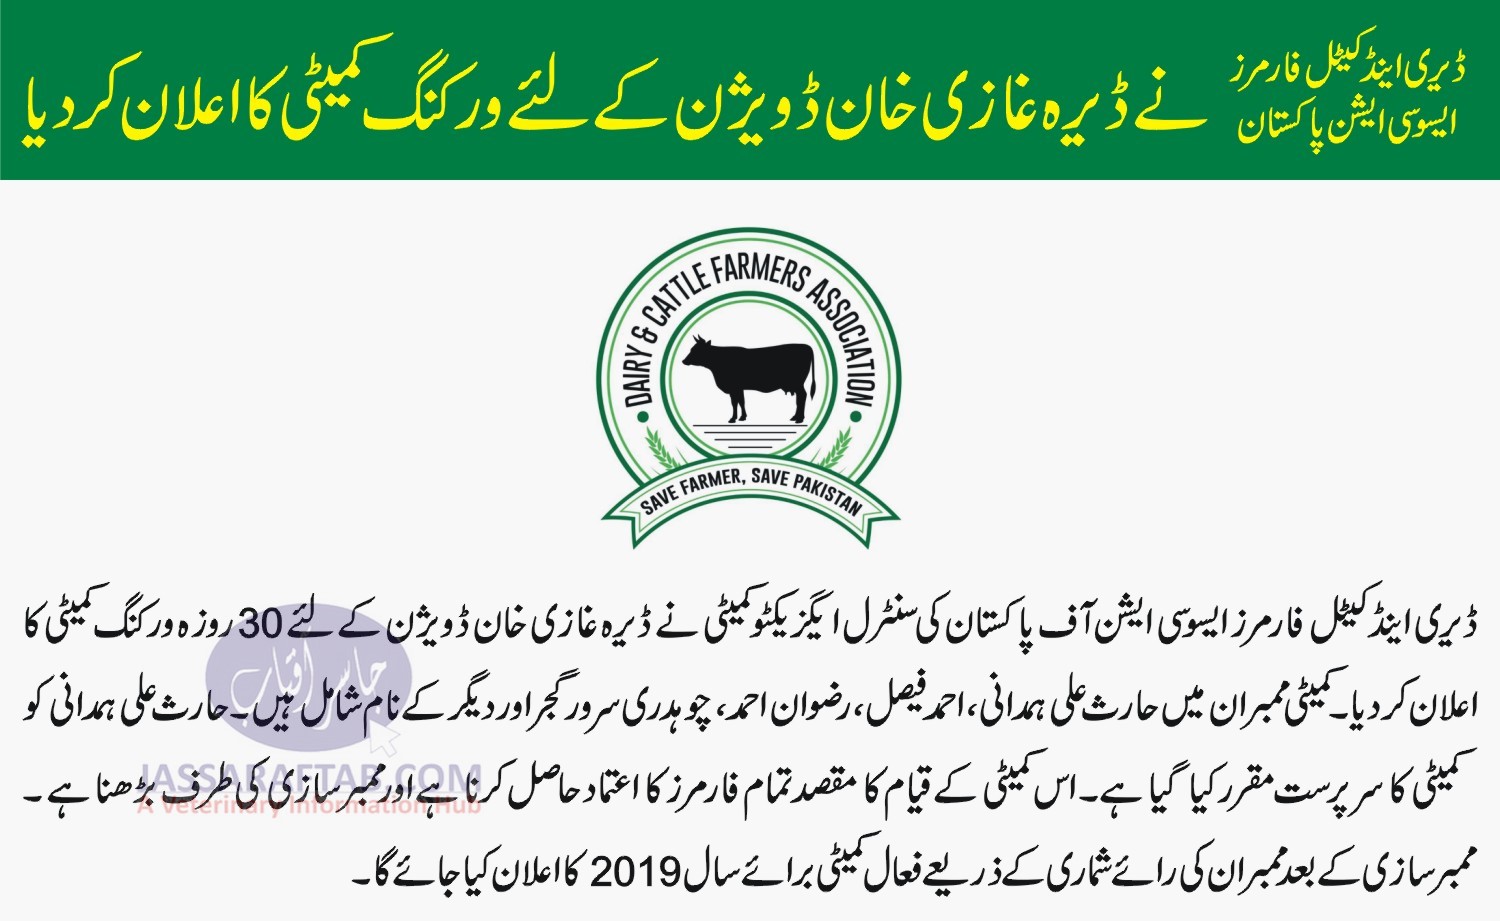 ڈیری اینڈ کیٹل فارمرز ایسوسی ایشن نے ڈیرہ غازی خان ڈویژن کے لئے ورکنگ کمیٹی کا اعلان کر دیا